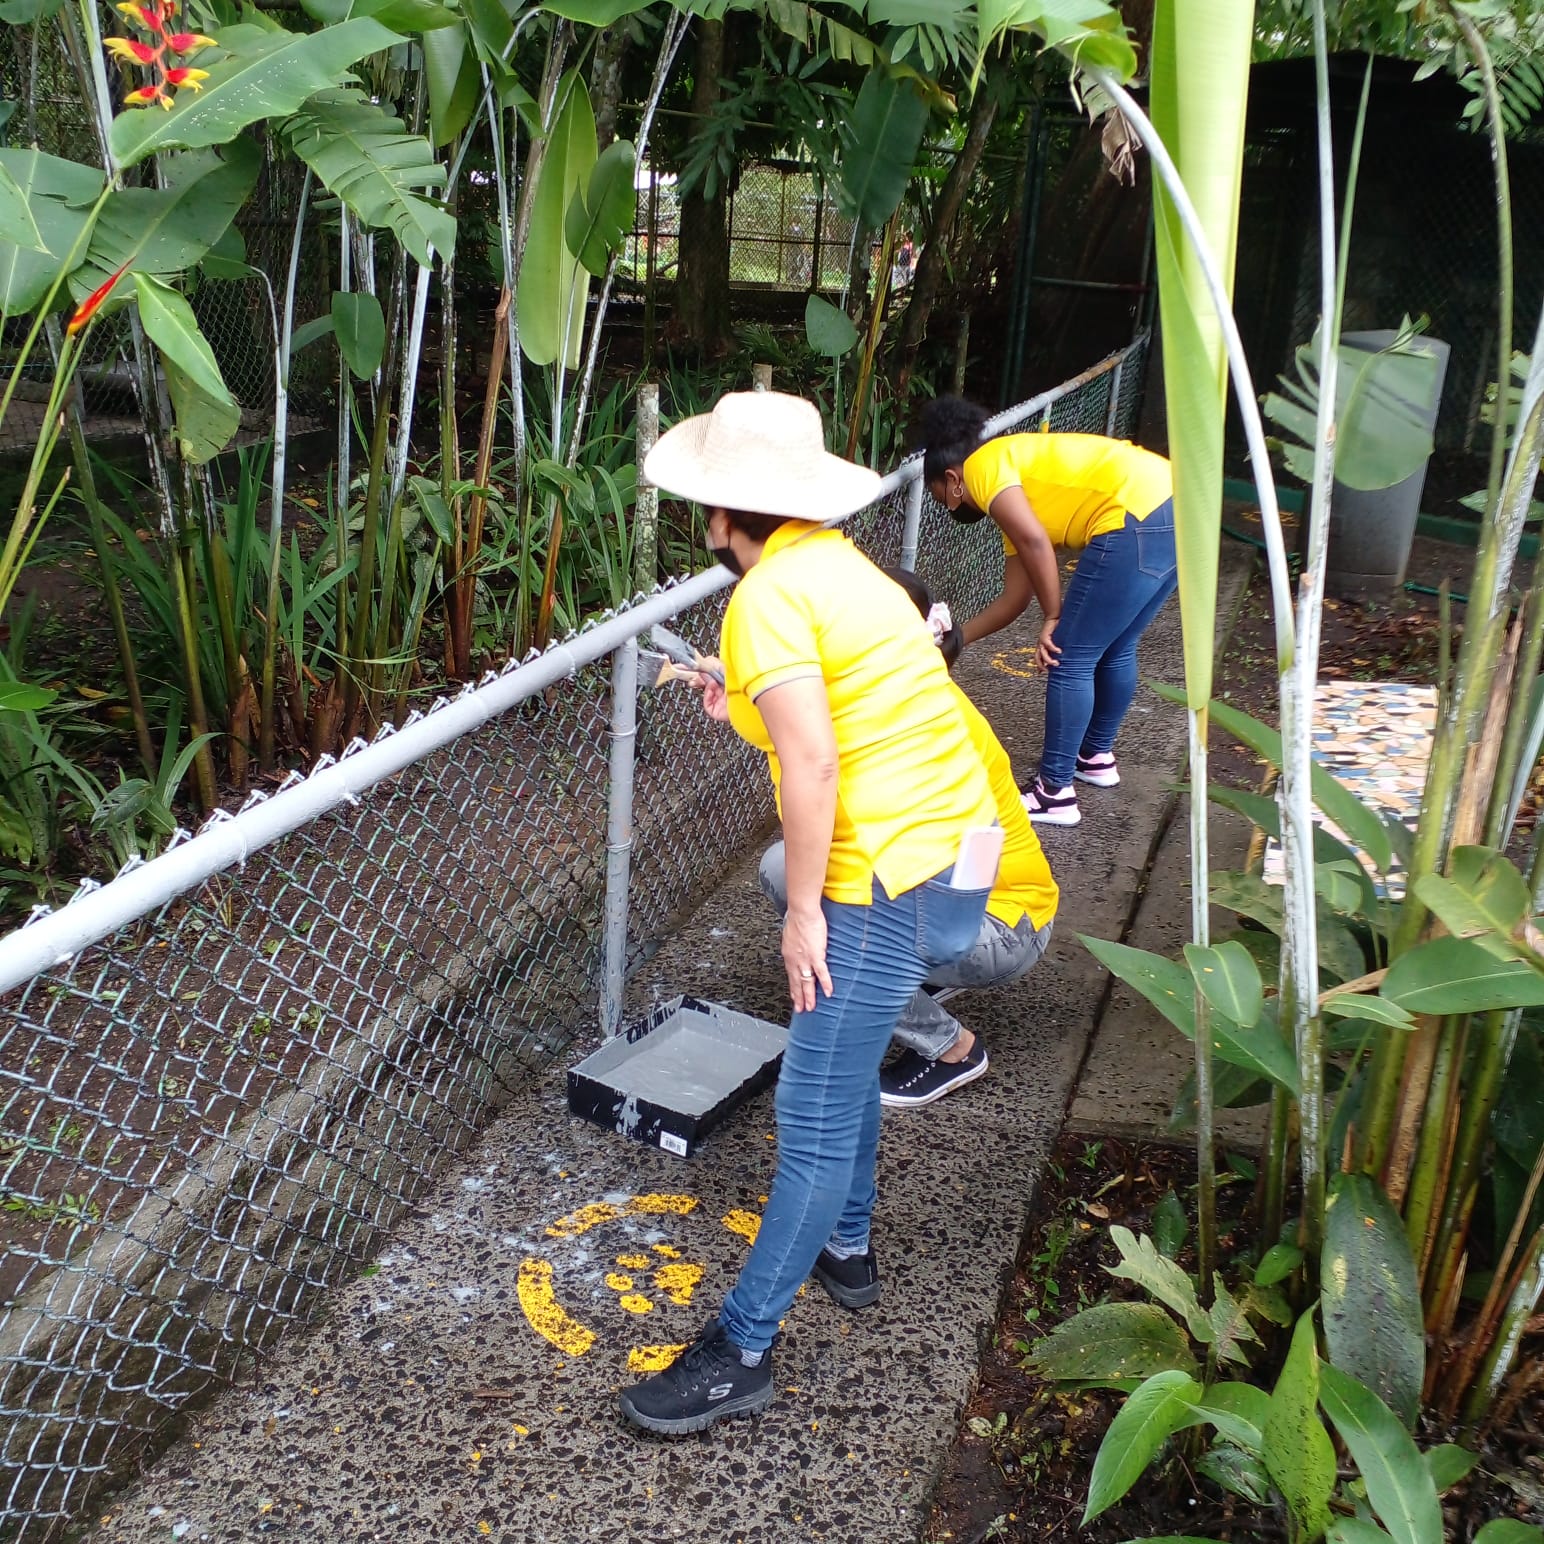 Voluntariado de la Alcaldía de Panamá realiza jornada de limpieza en el Parque Municipal Summit